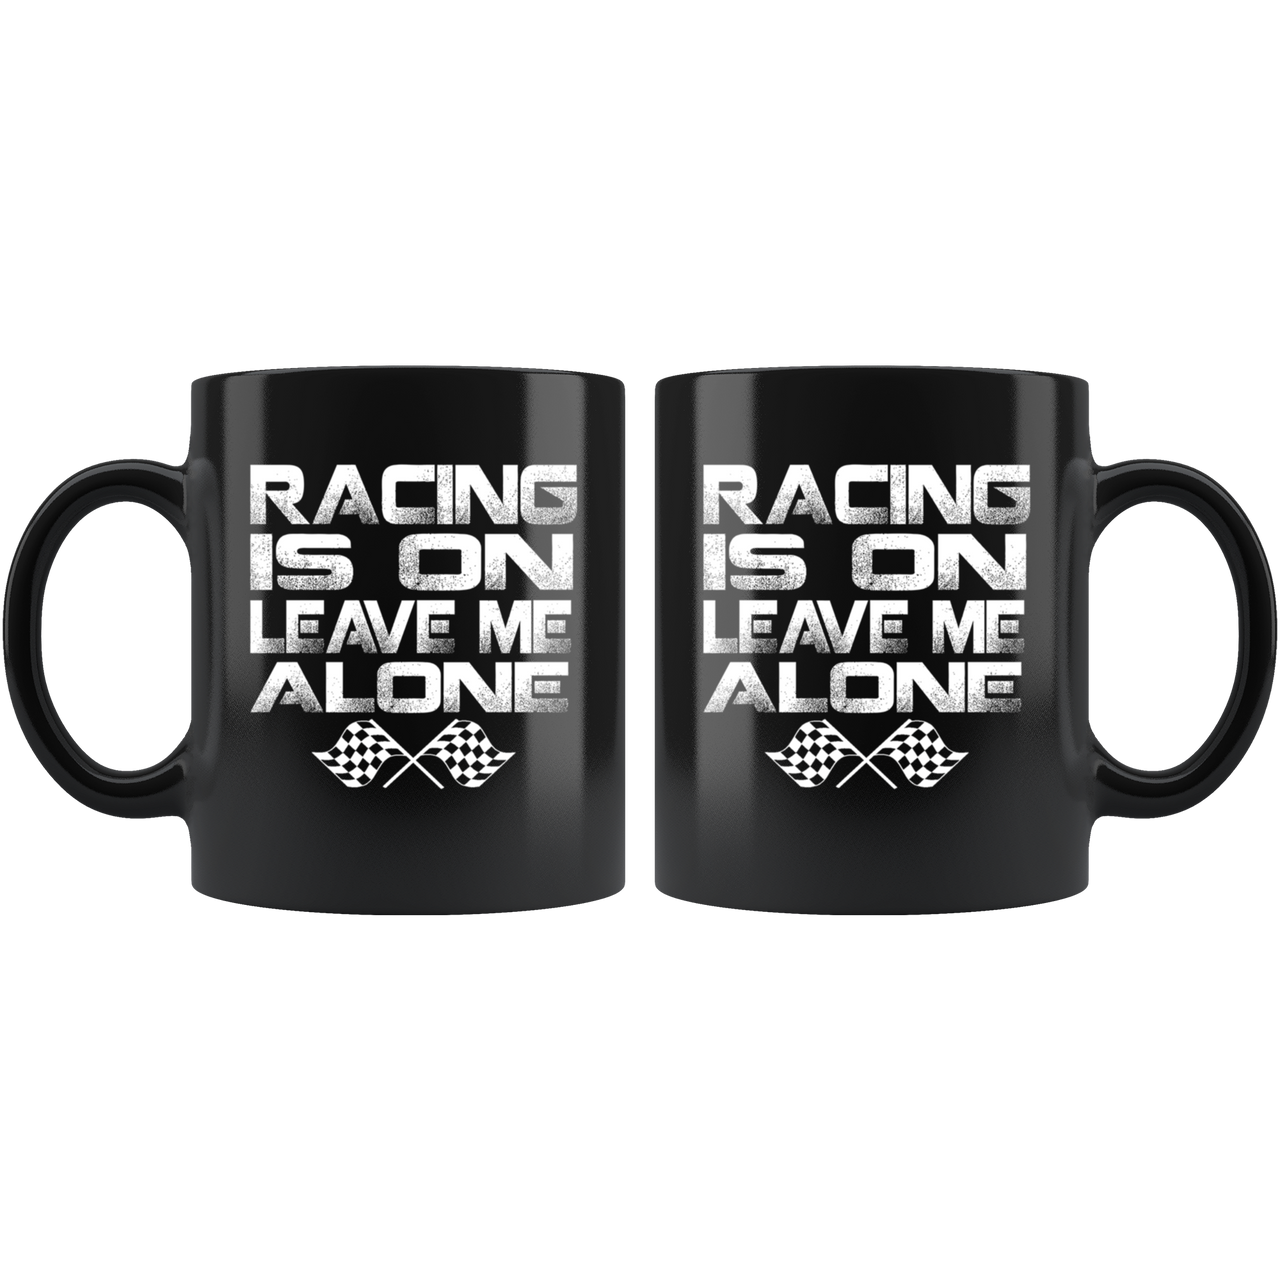 Racing Is On Leave Me Alone Mug!